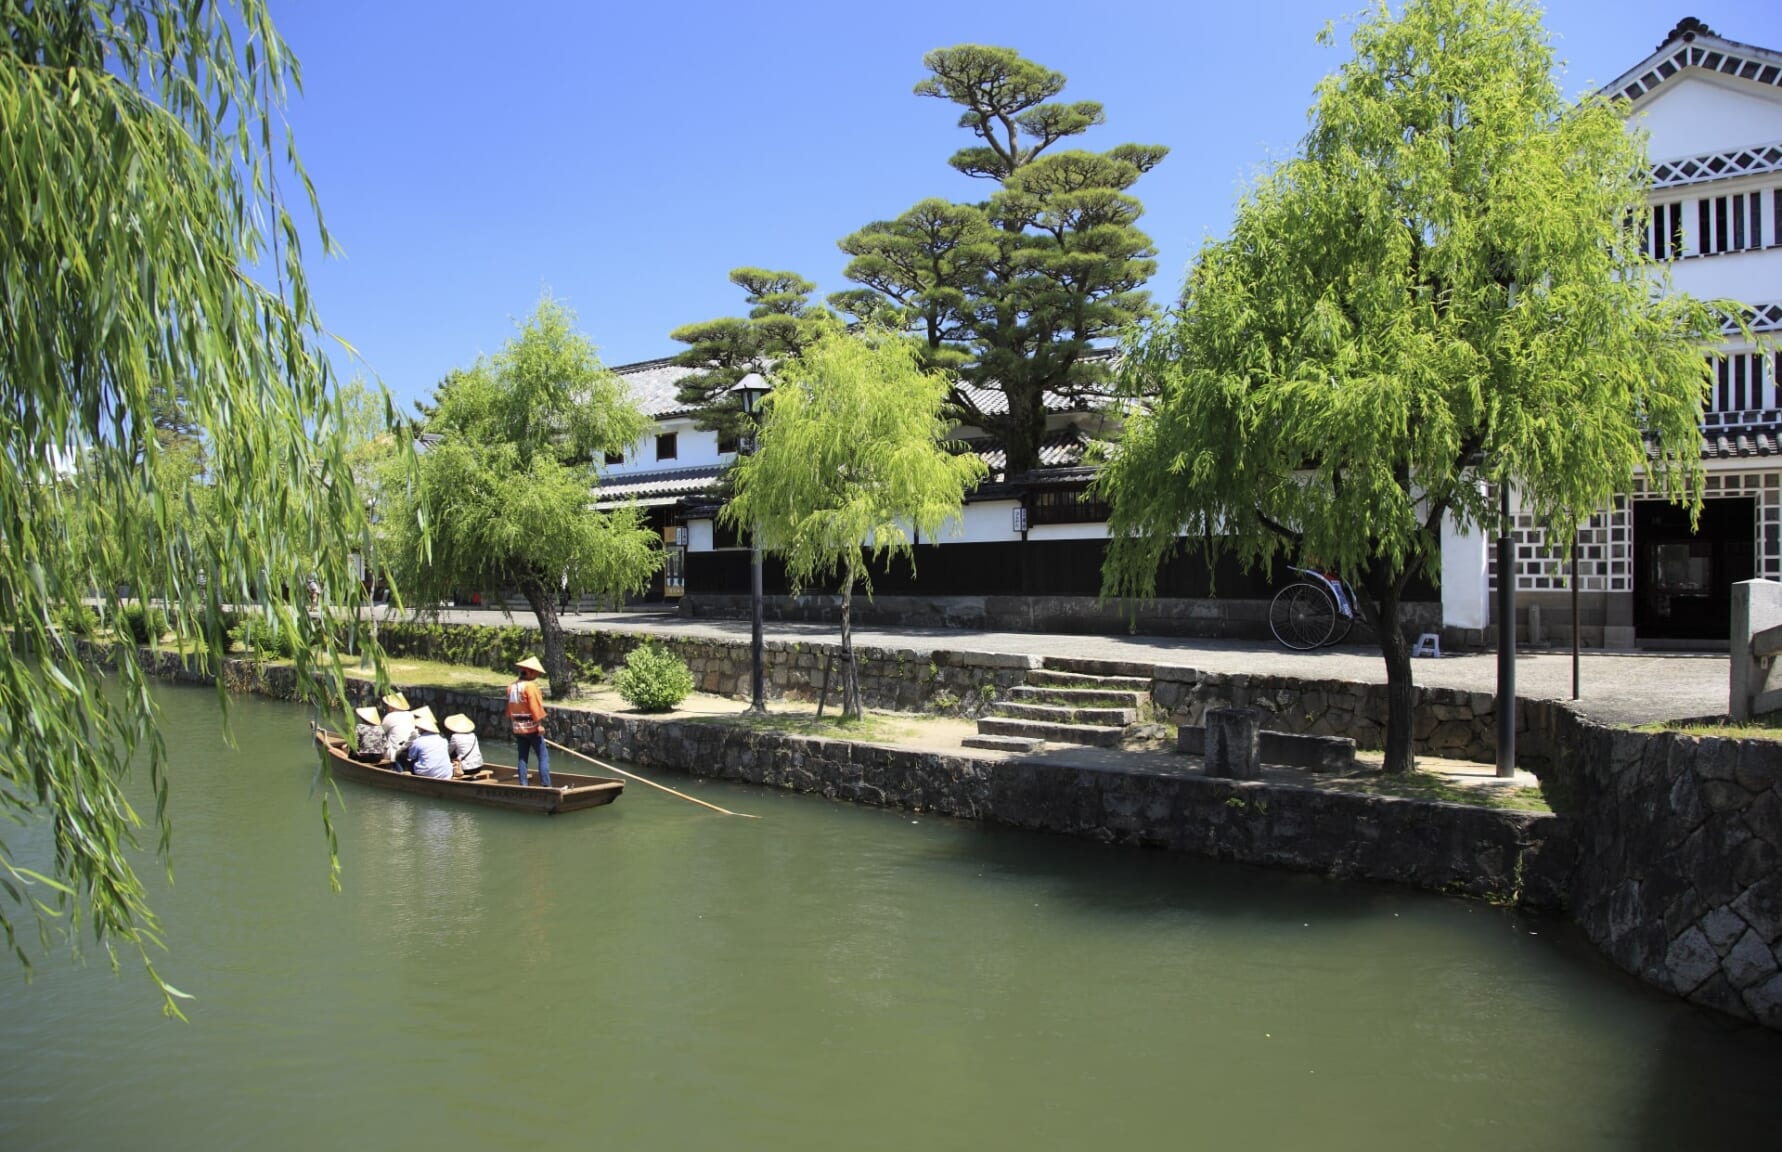 Canal of Kurashiki Bikan Historical Quarter